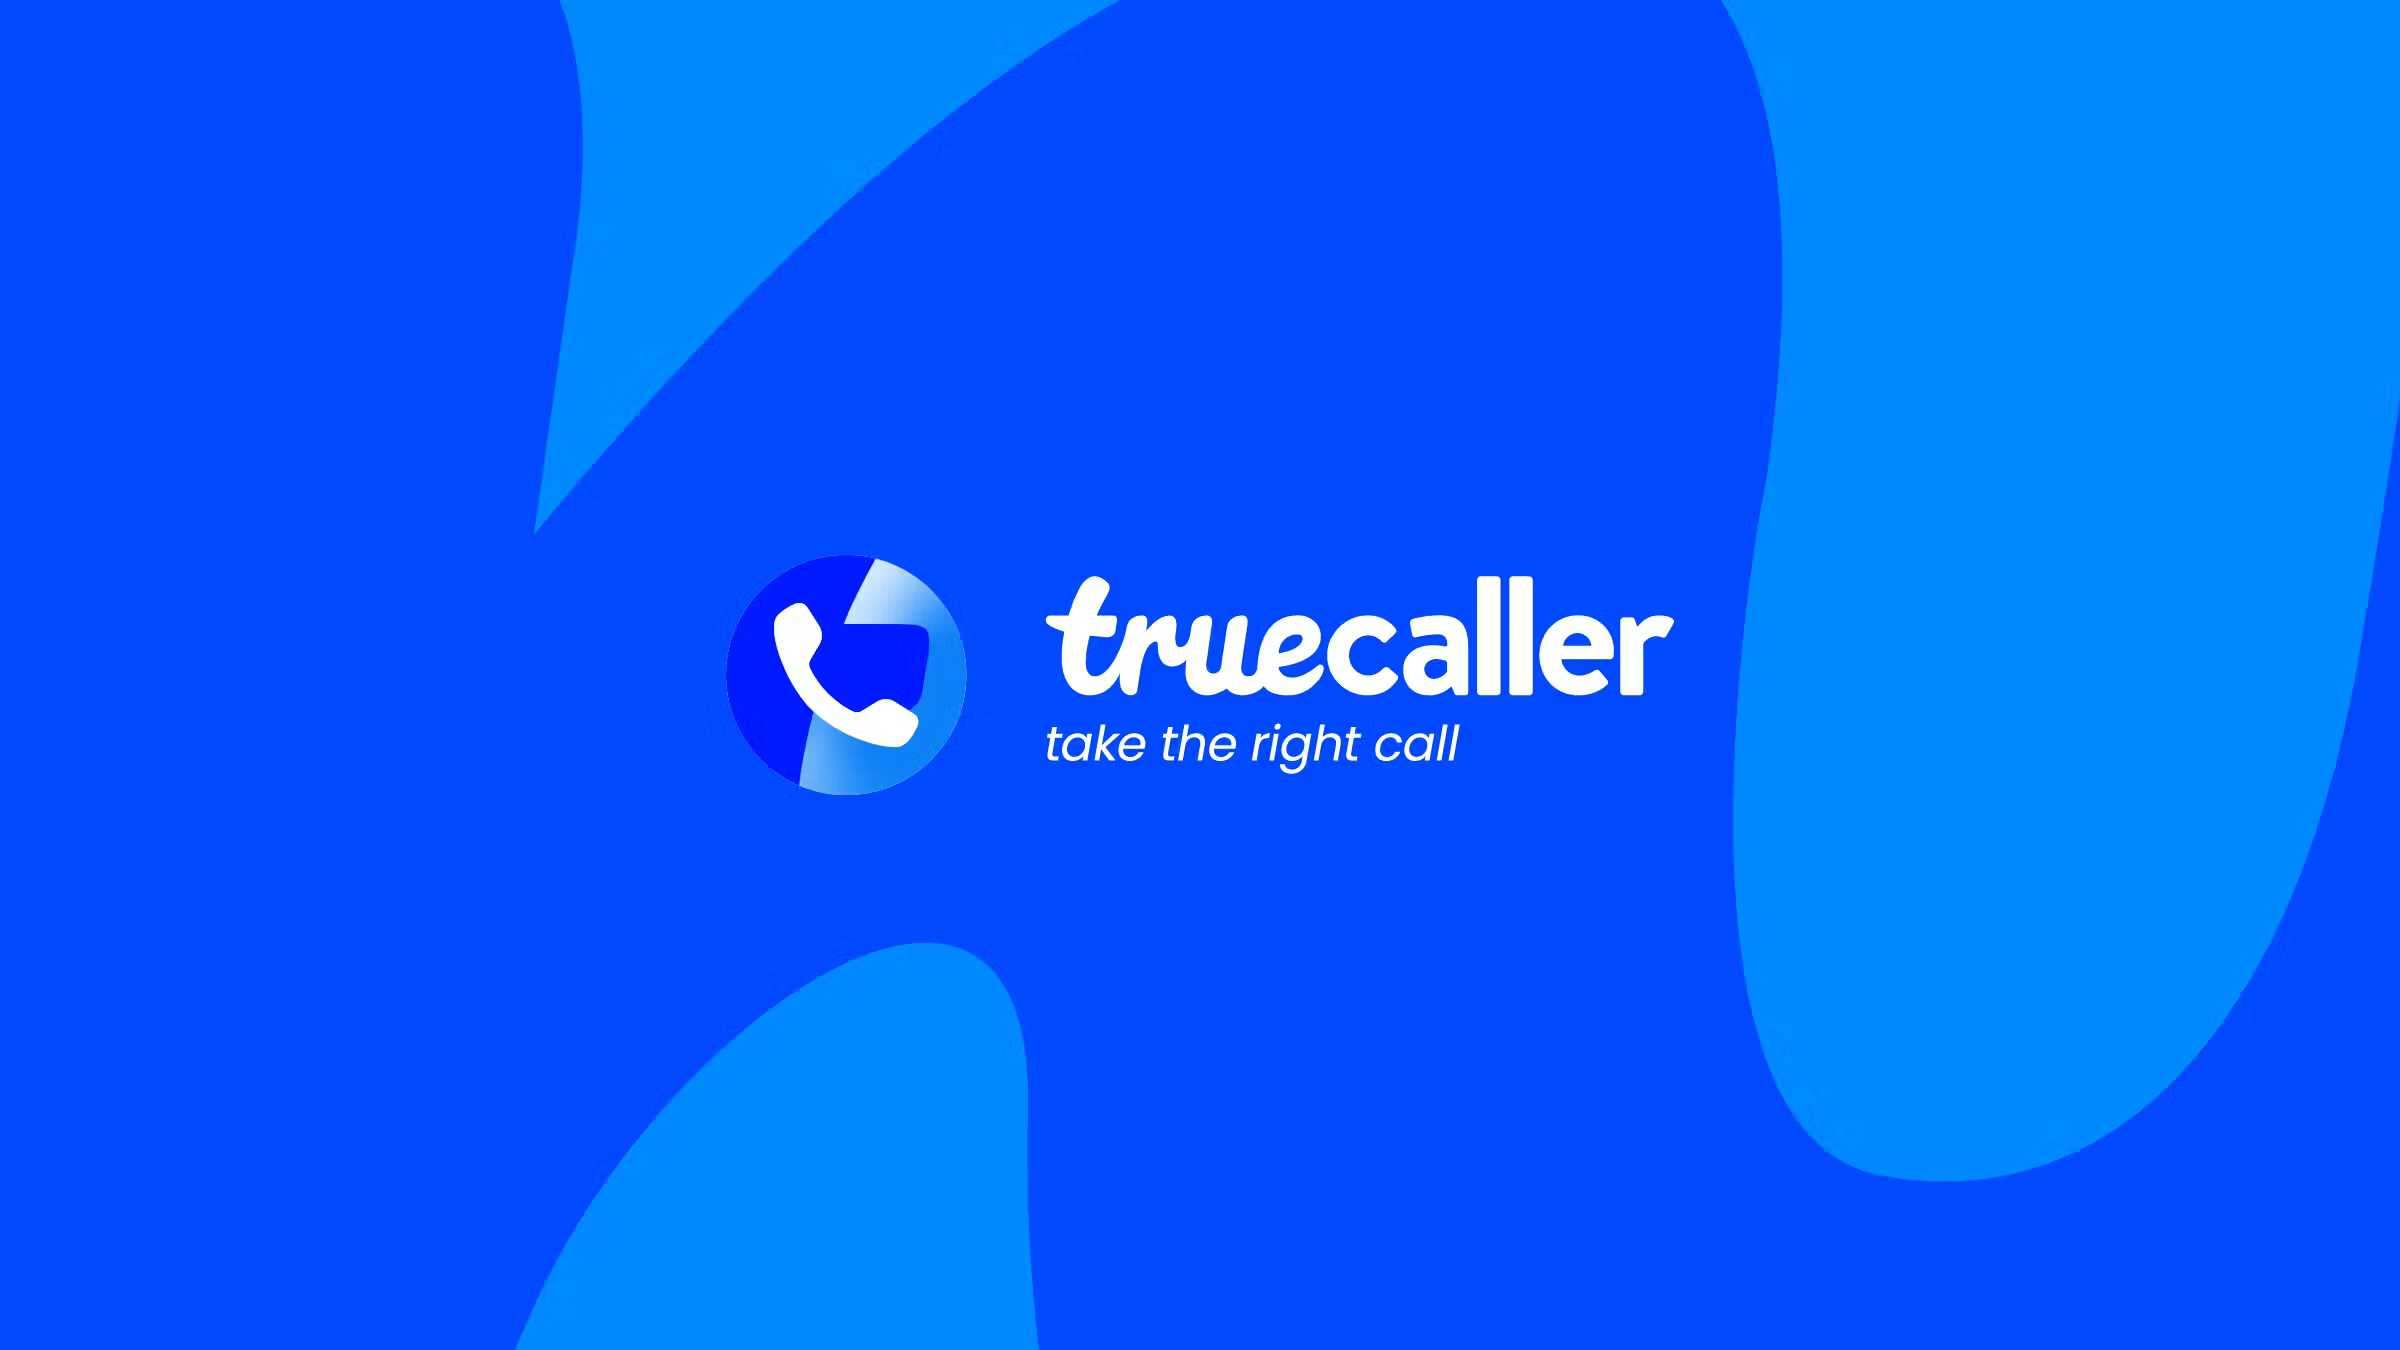 Truecaller acquired TrustCheckr